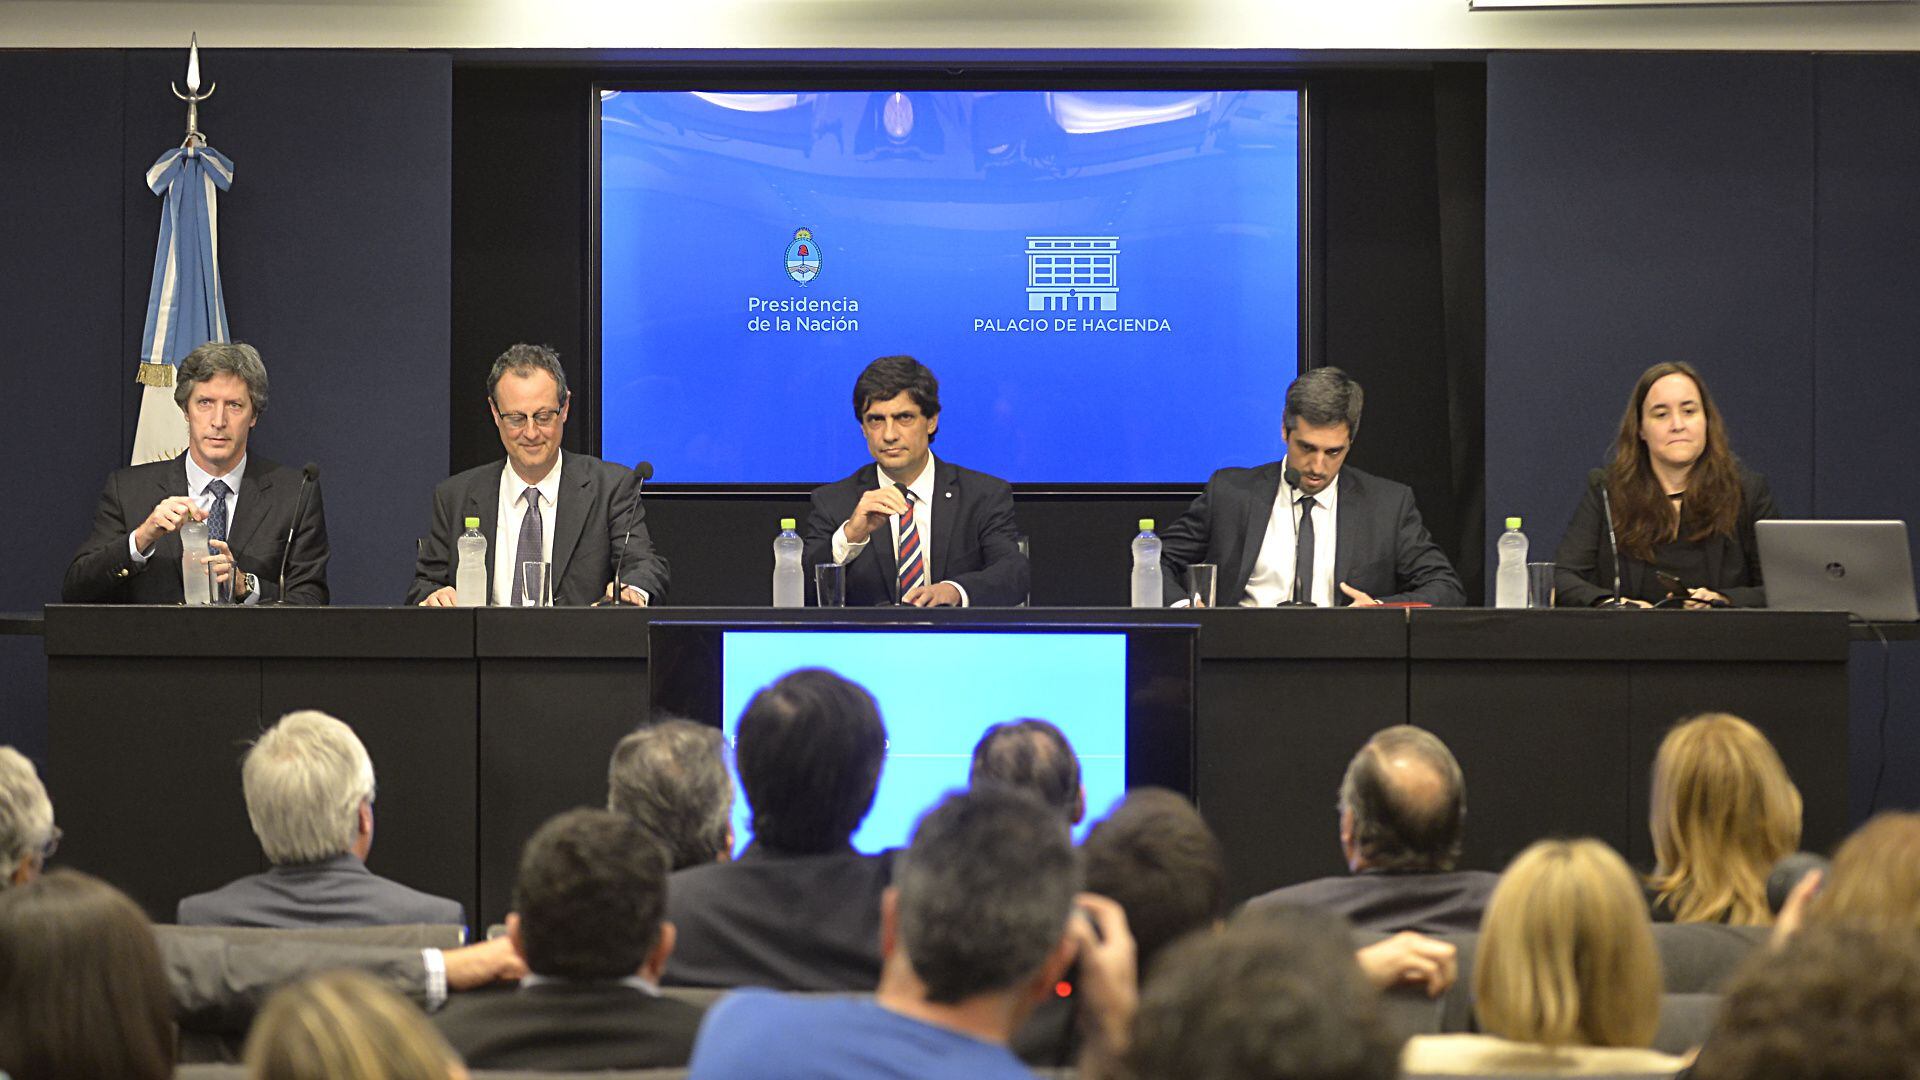 Agosto 2019: después de las PASO, el nuevo ministro de Hacienda, Hernán Lacunza, anuncia el reperfilamiento de la deuda bajo ley local (Gustavo Gavotti)